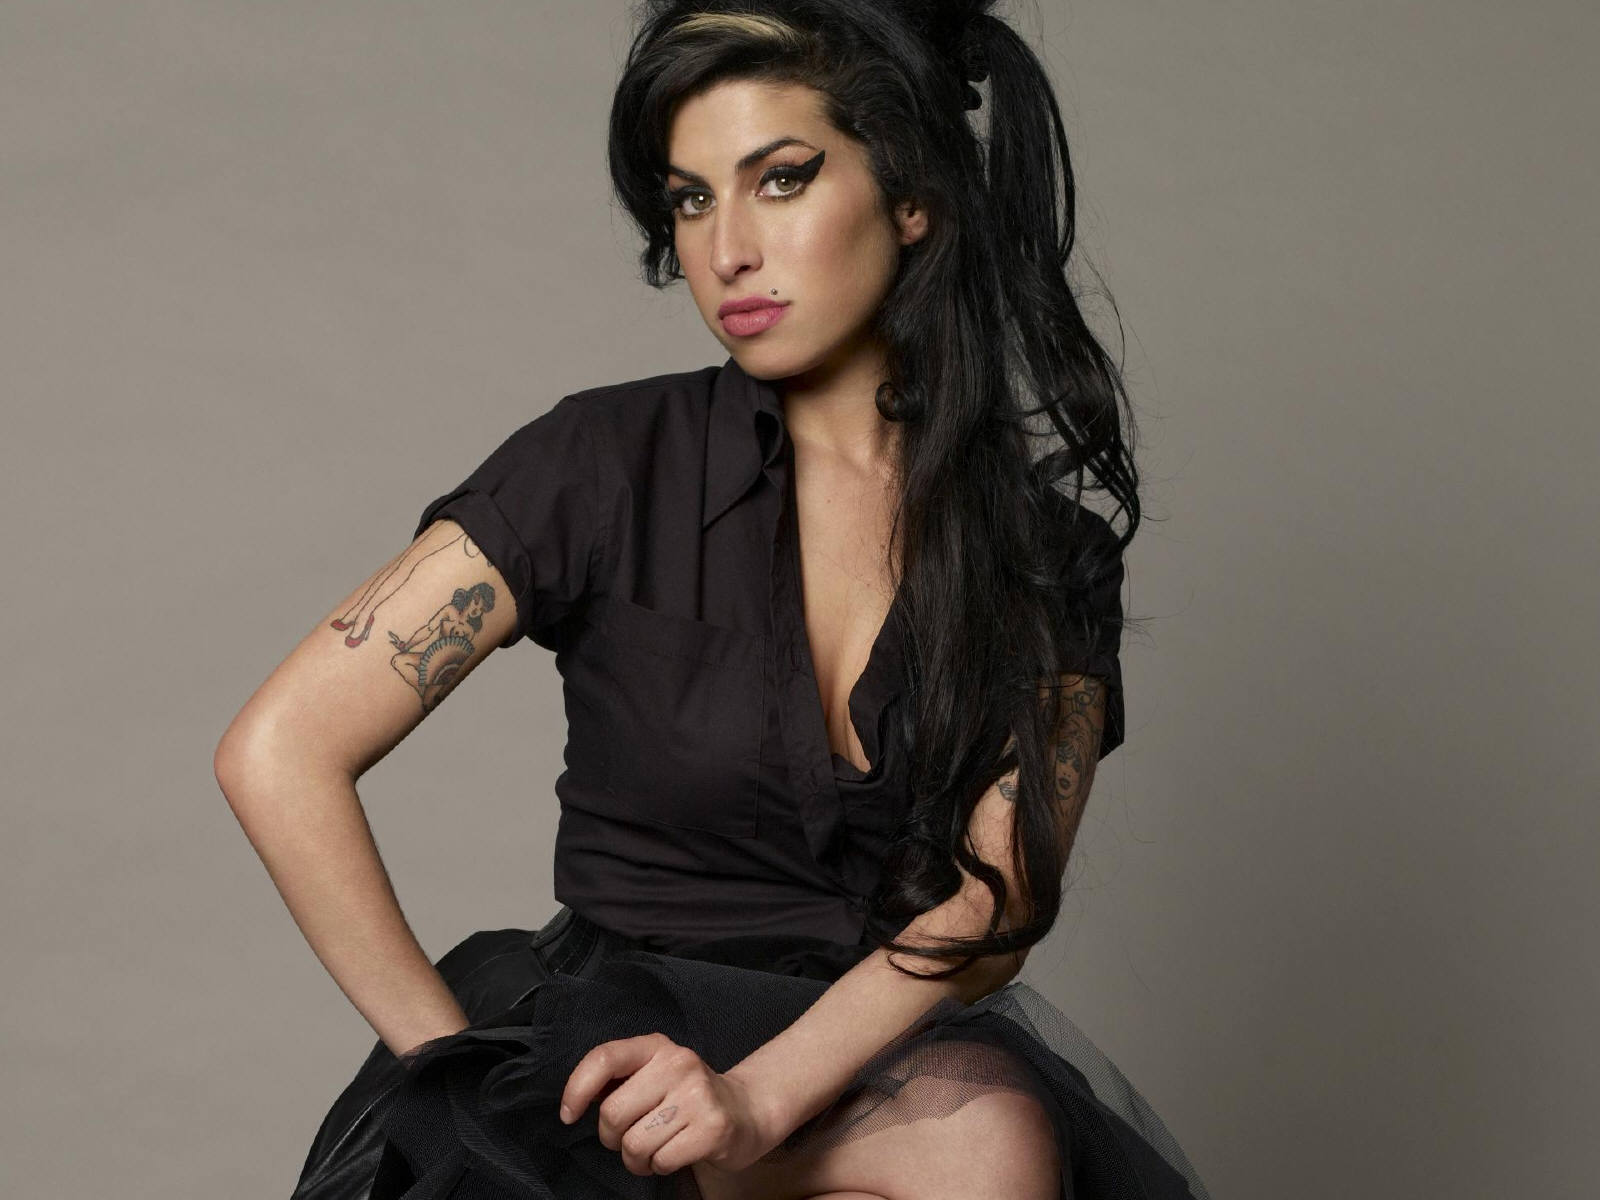 Fond d'ecran Amy Winehouse in black